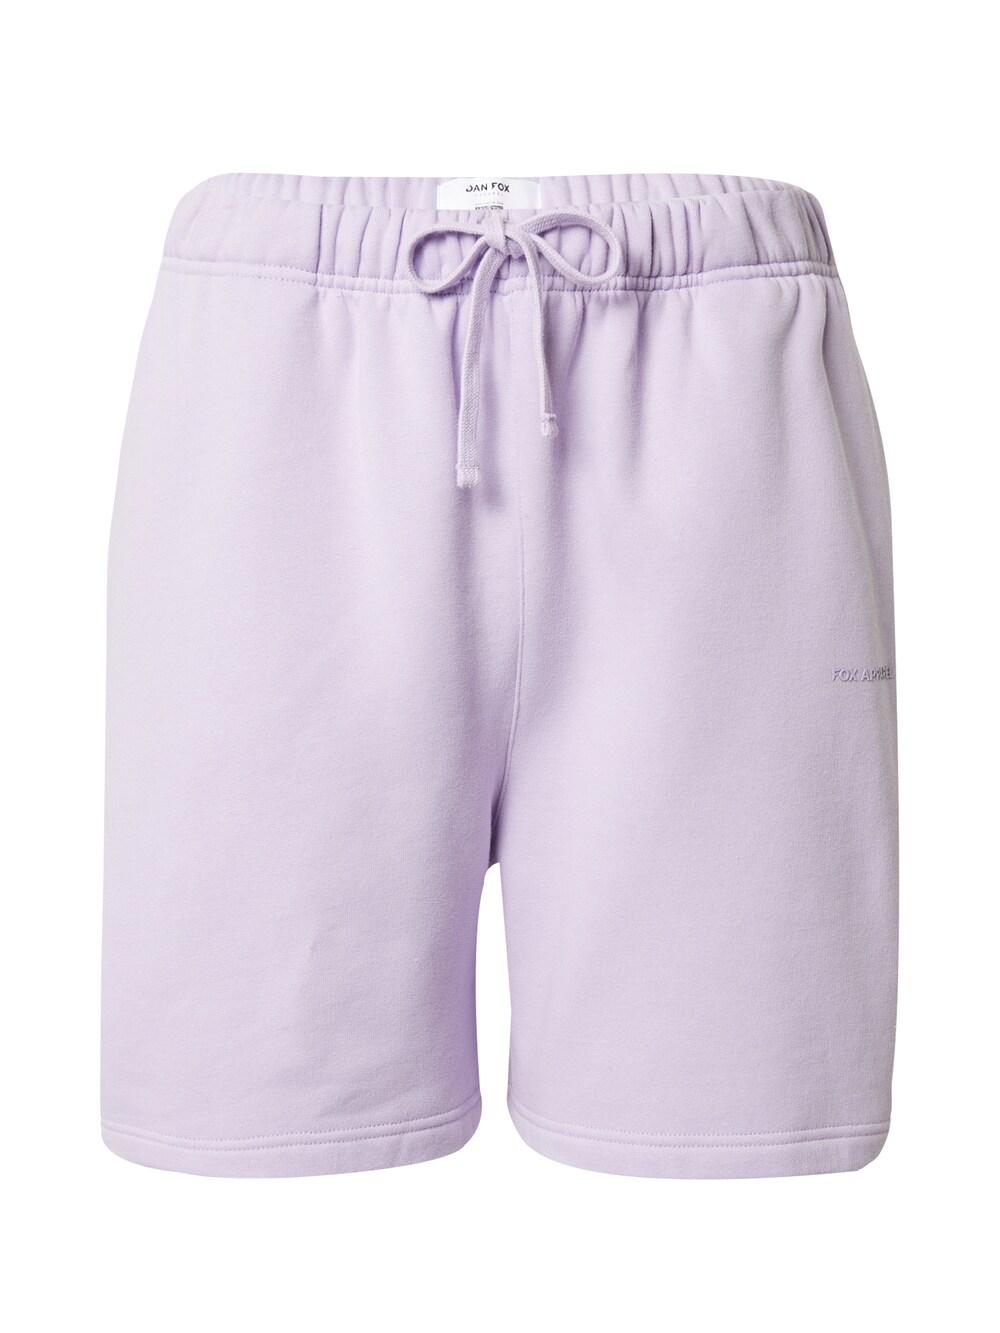 Обычные брюки DAN FOX APPAREL Sean, светло-фиолетовый